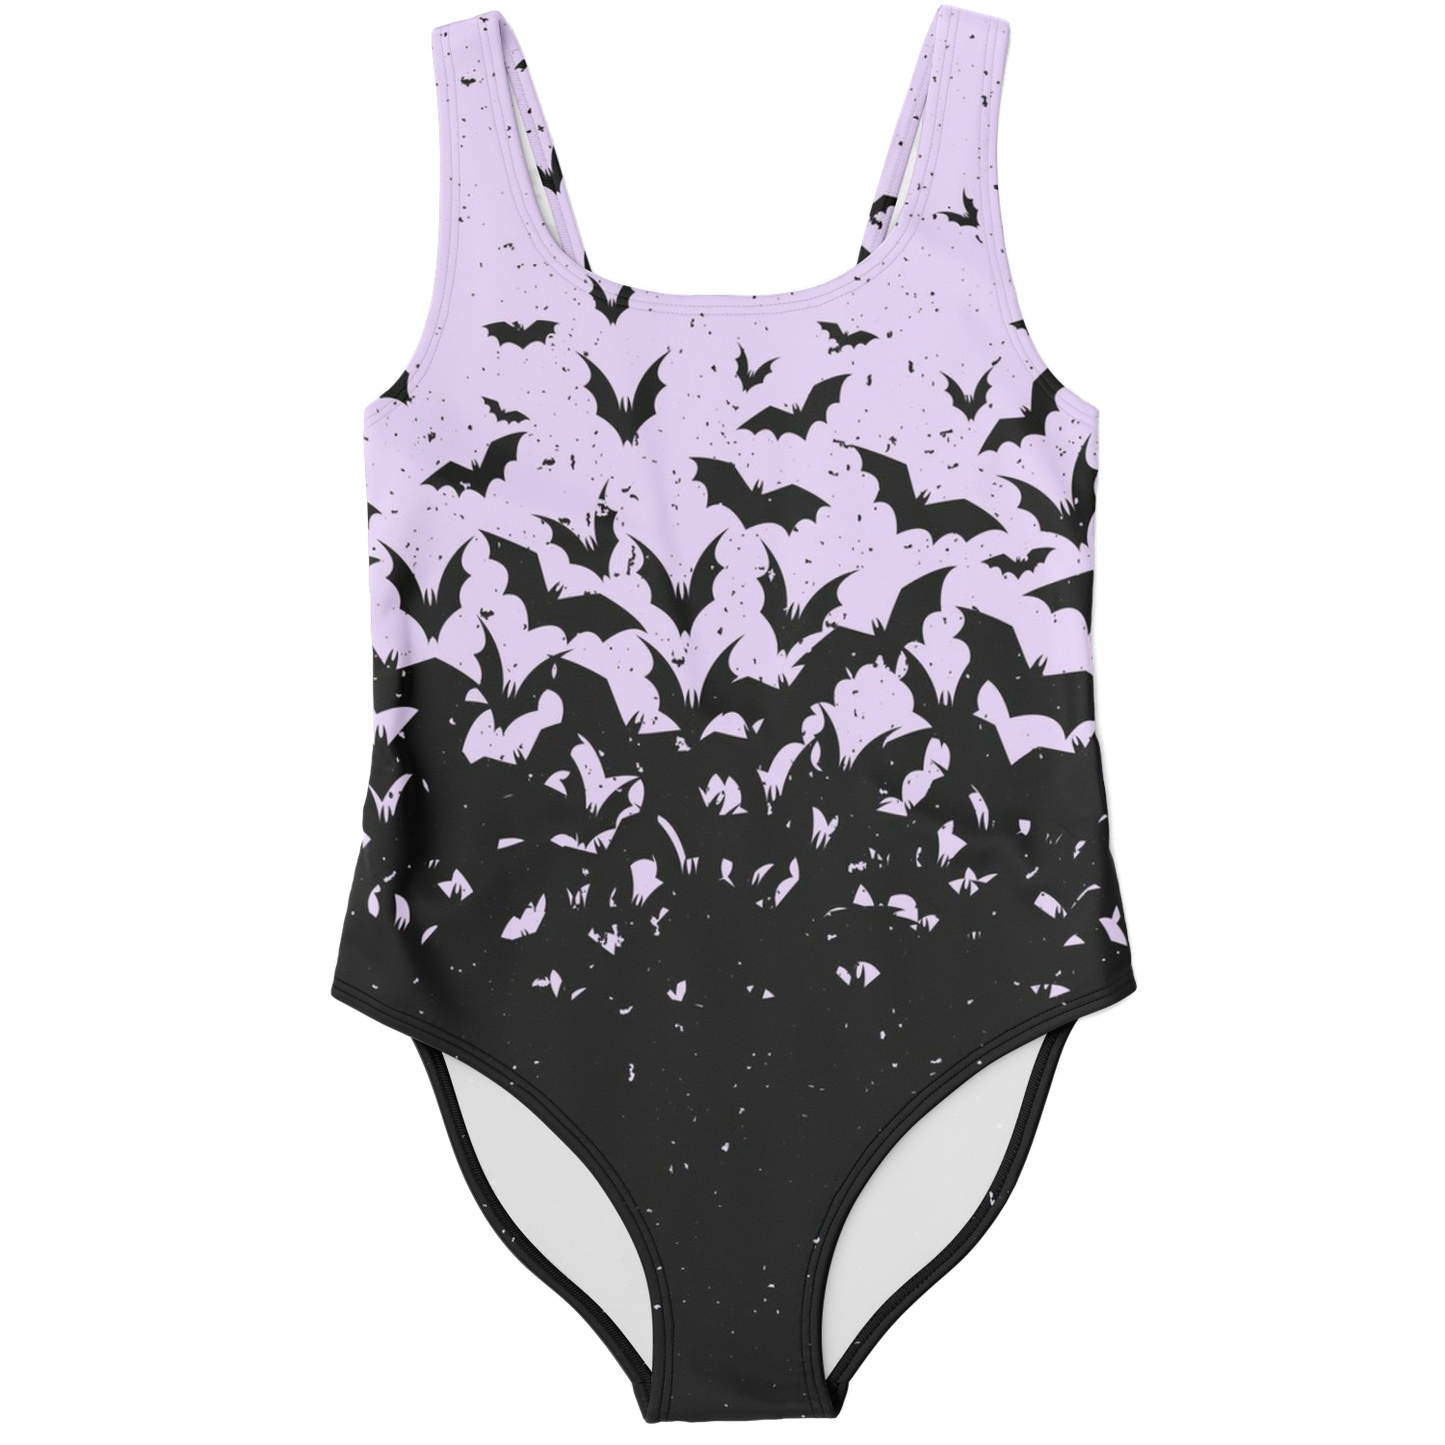 Bat Swarm Swimsuit - NeoSkull